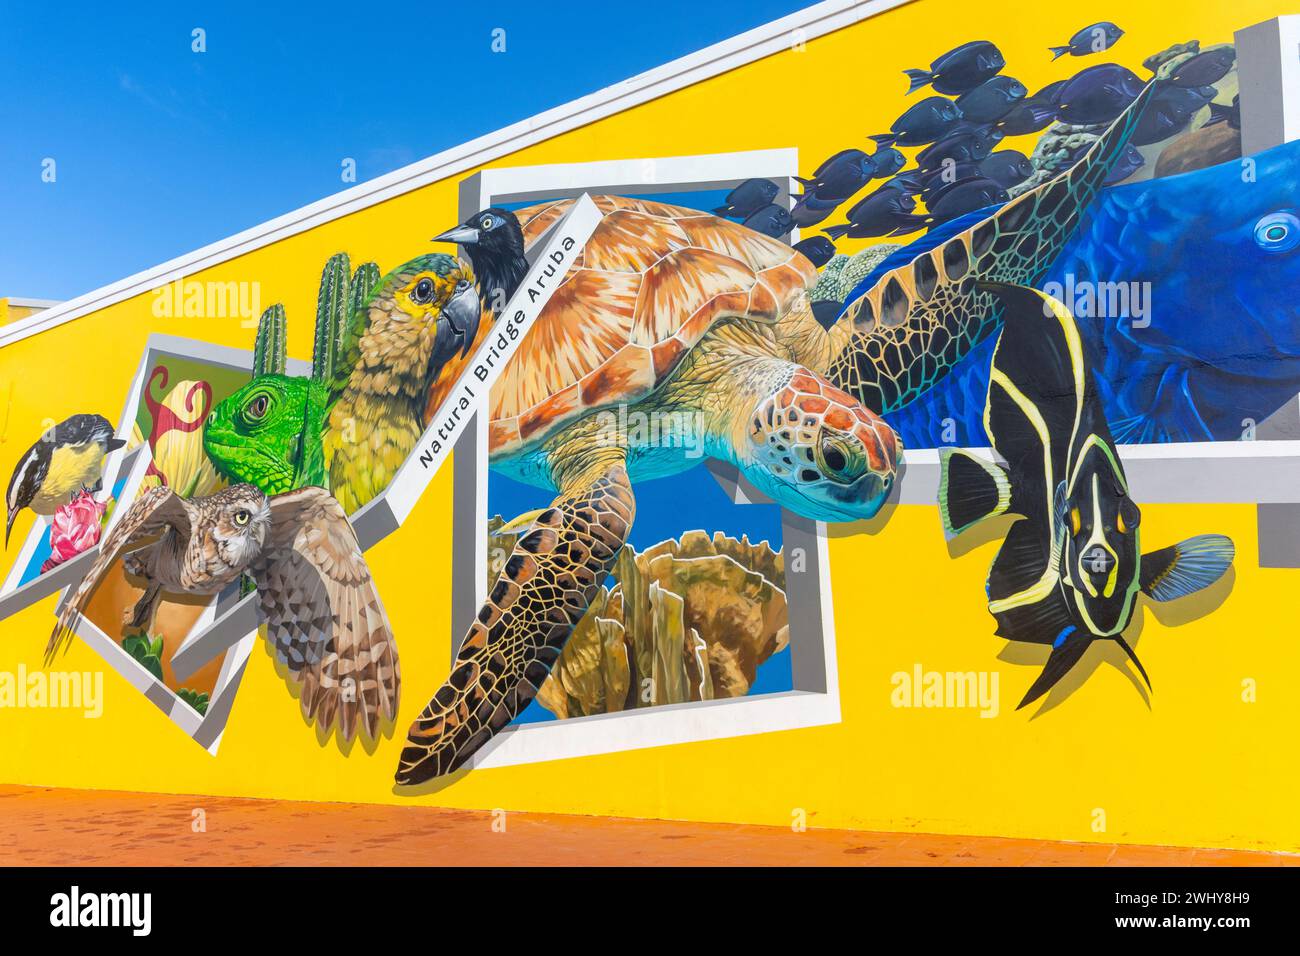 Murale sur le mur de la boutique de cadeaux à Natural Bridge Aruba, Santa Cruz, Aruba, ABC Islands, les Antilles sous le vent, Caraïbes Banque D'Images